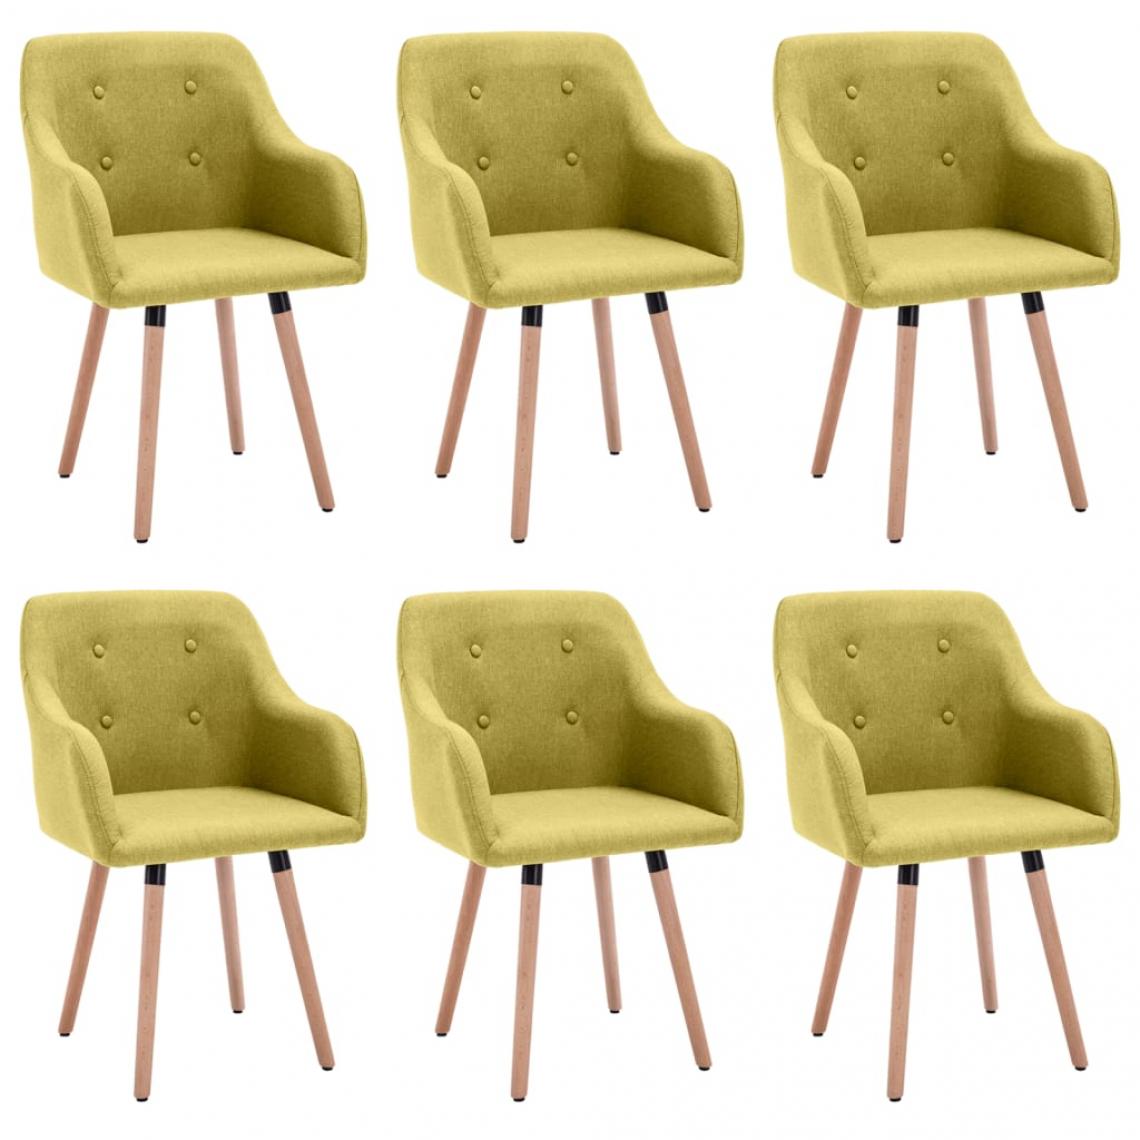 Decoshop26 - Lot de 6 chaises de salle à manger cuisine design moderne tissu vert CDS022918 - Chaises